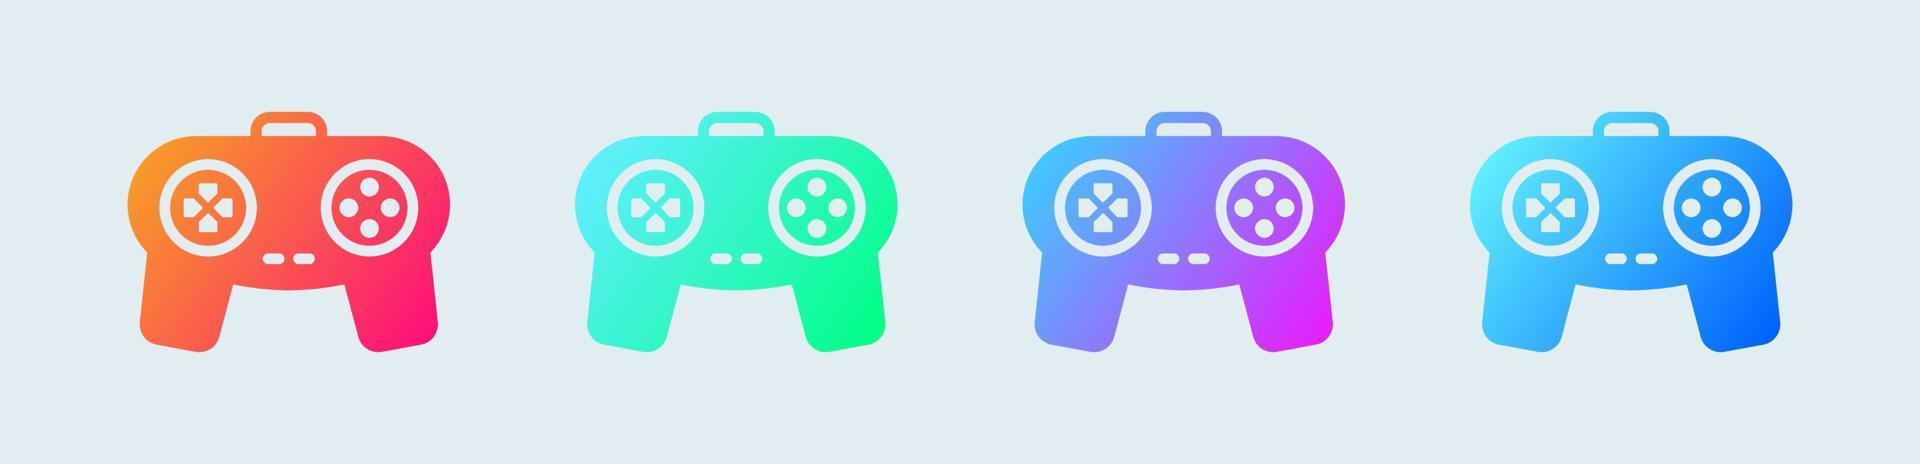 icono sólido de joystick en colores degradados. Ilustración de vector de signo de consola de juegos.